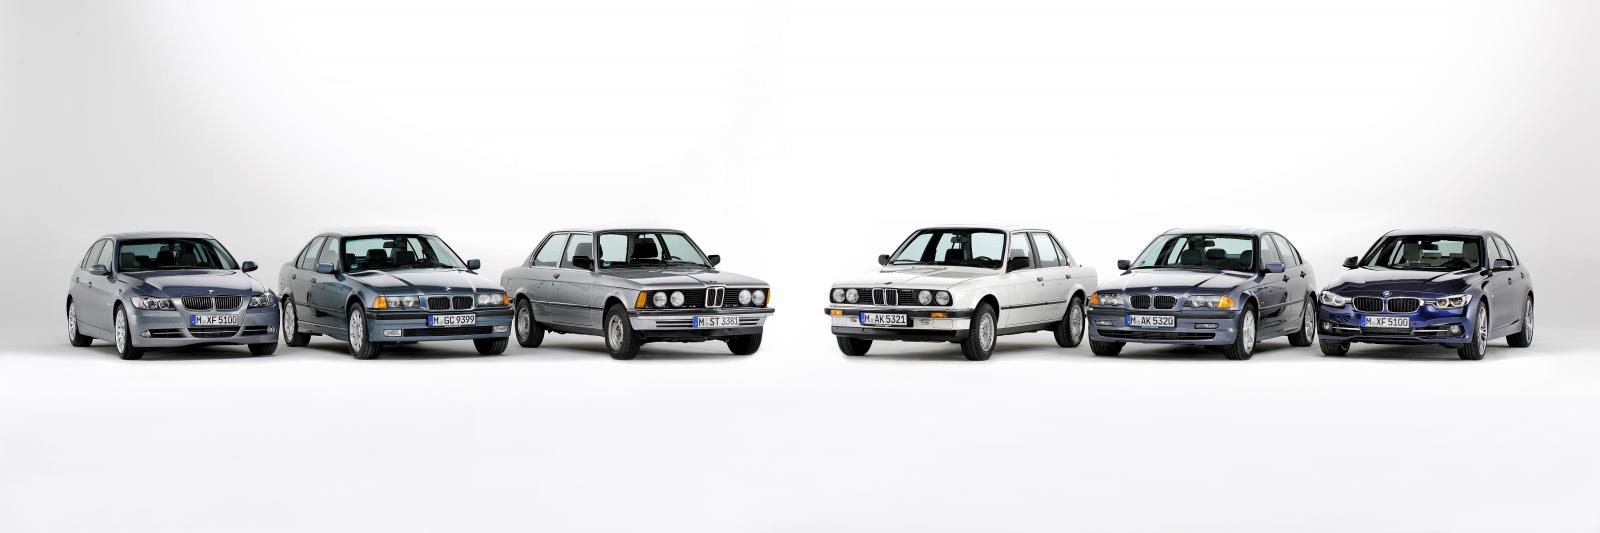 BMW 3 SERS 40 YAINDA RESM GALERS